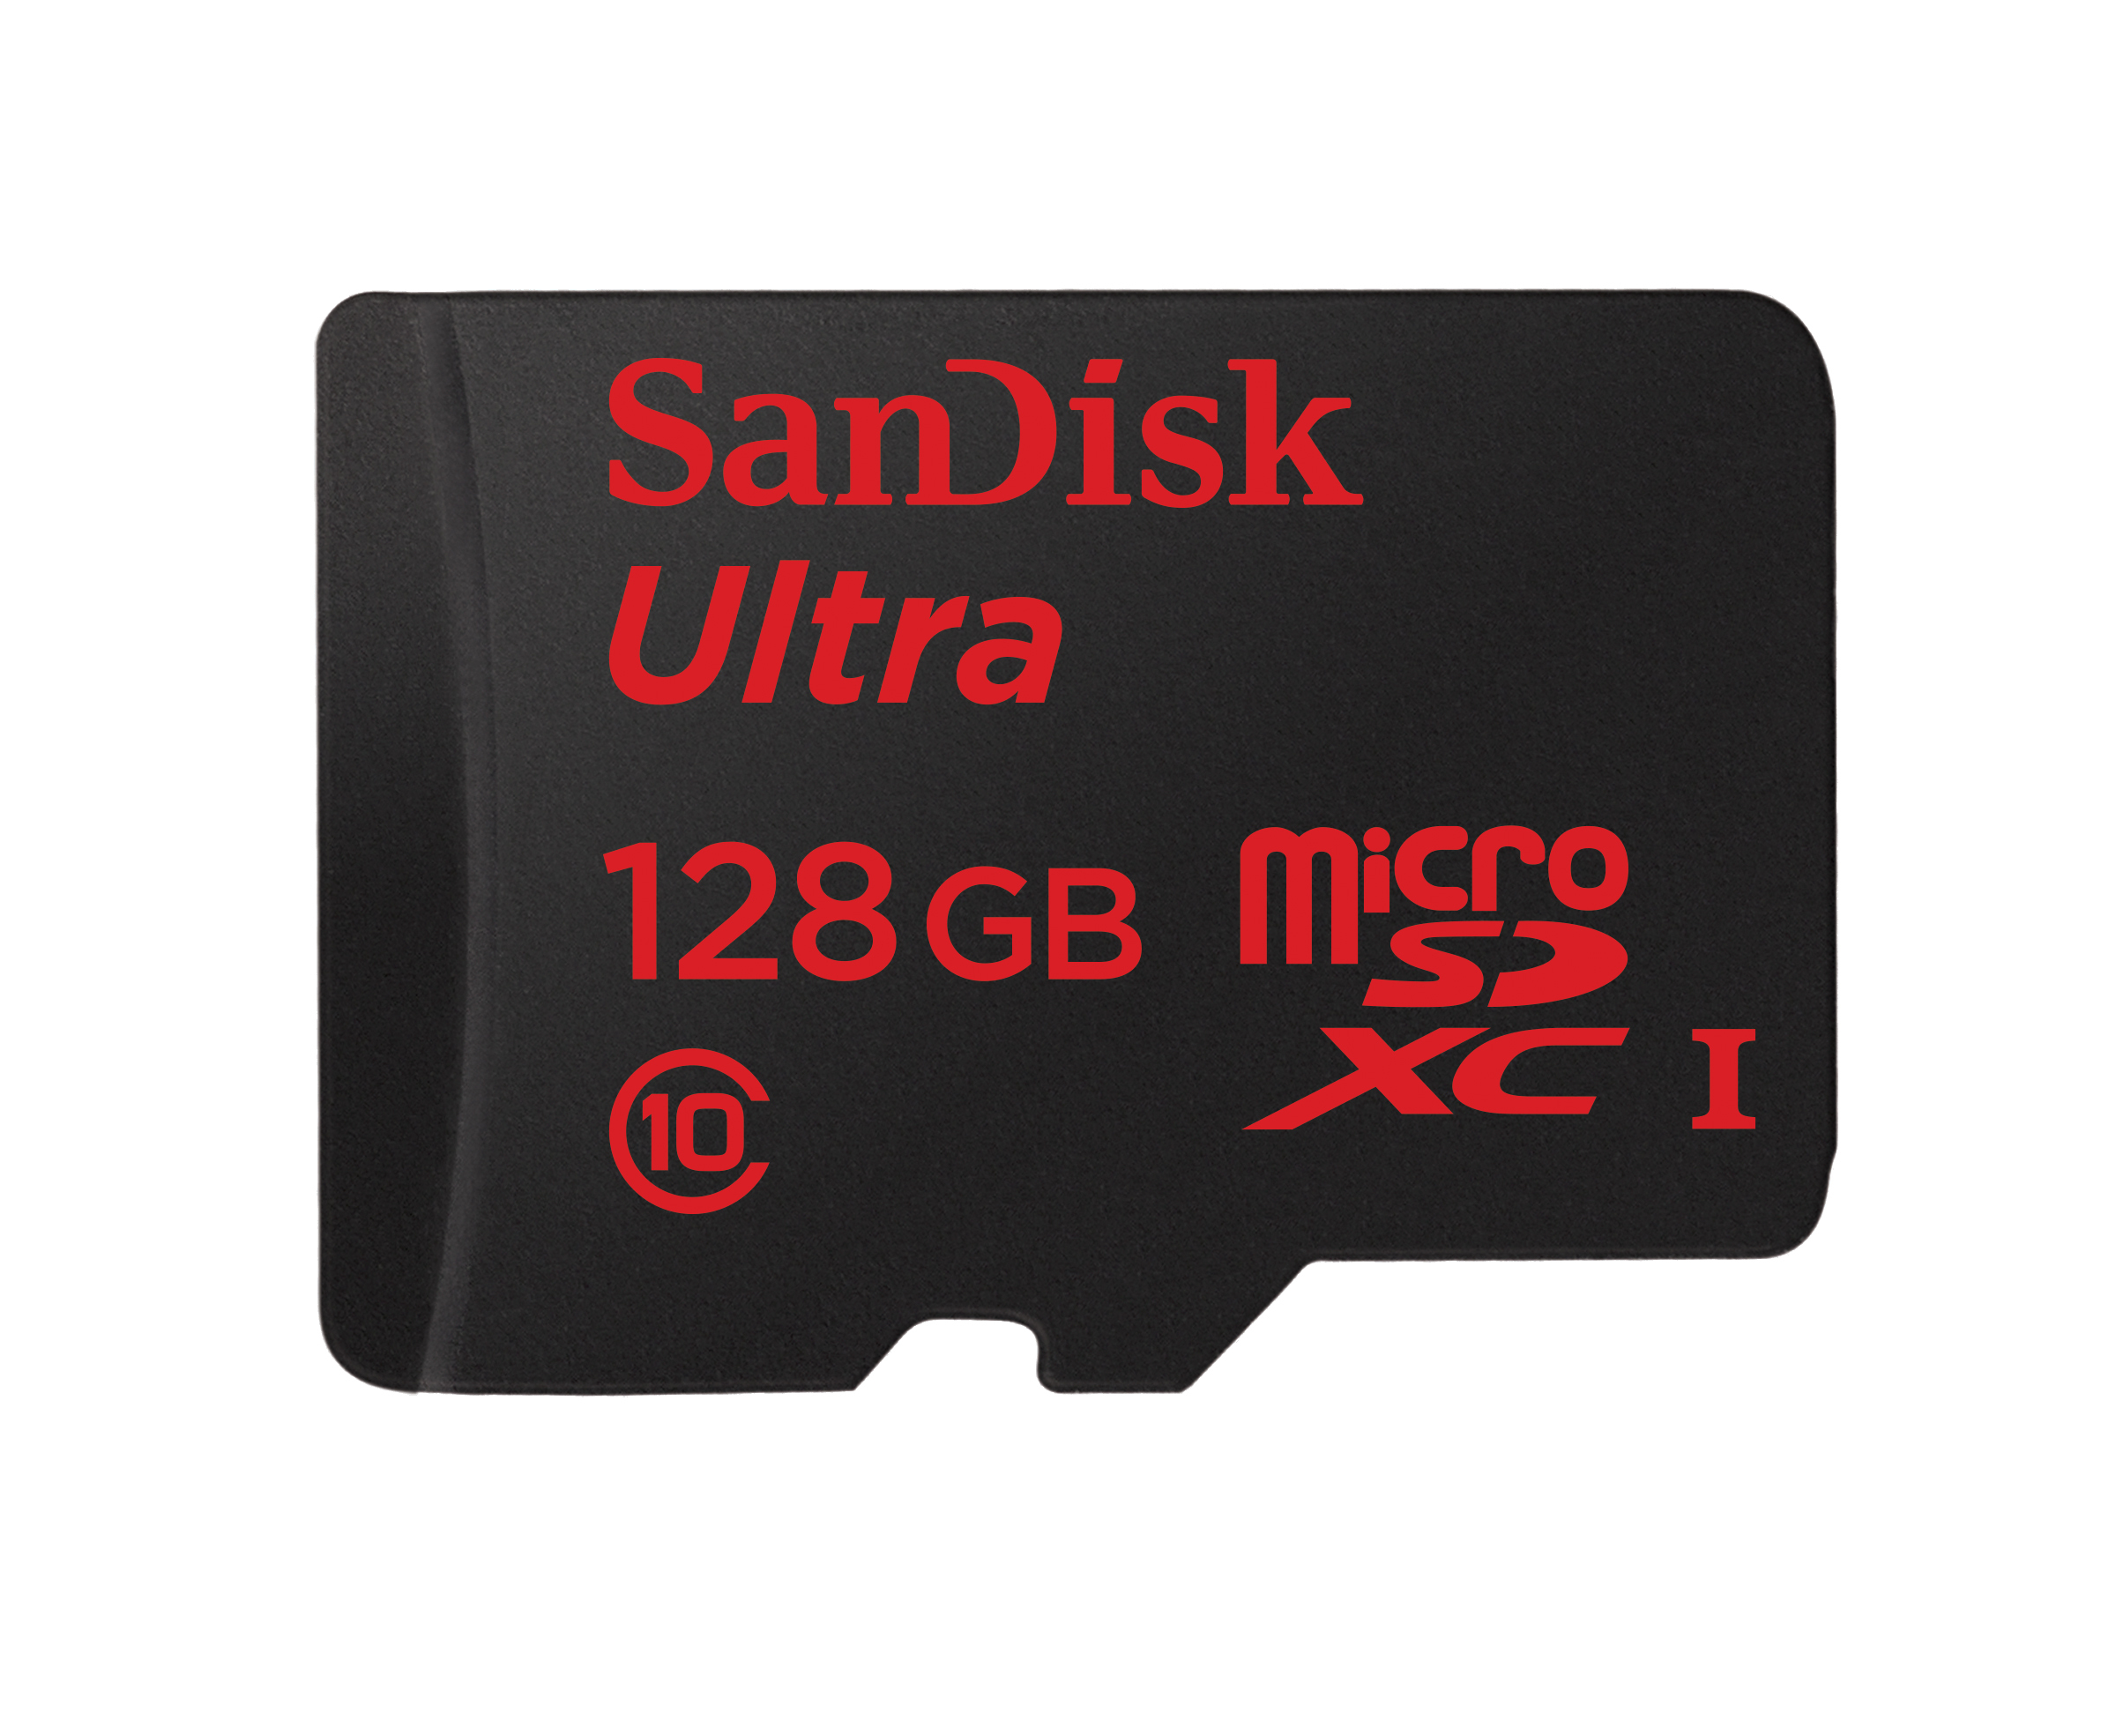 Immagine pubblicata in relazione al seguente contenuto: SanDisk annuncia la prima microSD al mondo con capacit di 128GB | Nome immagine: news20826_SanDisk-Ultra-microSDXC-UHS-I-128GB_1.jpg